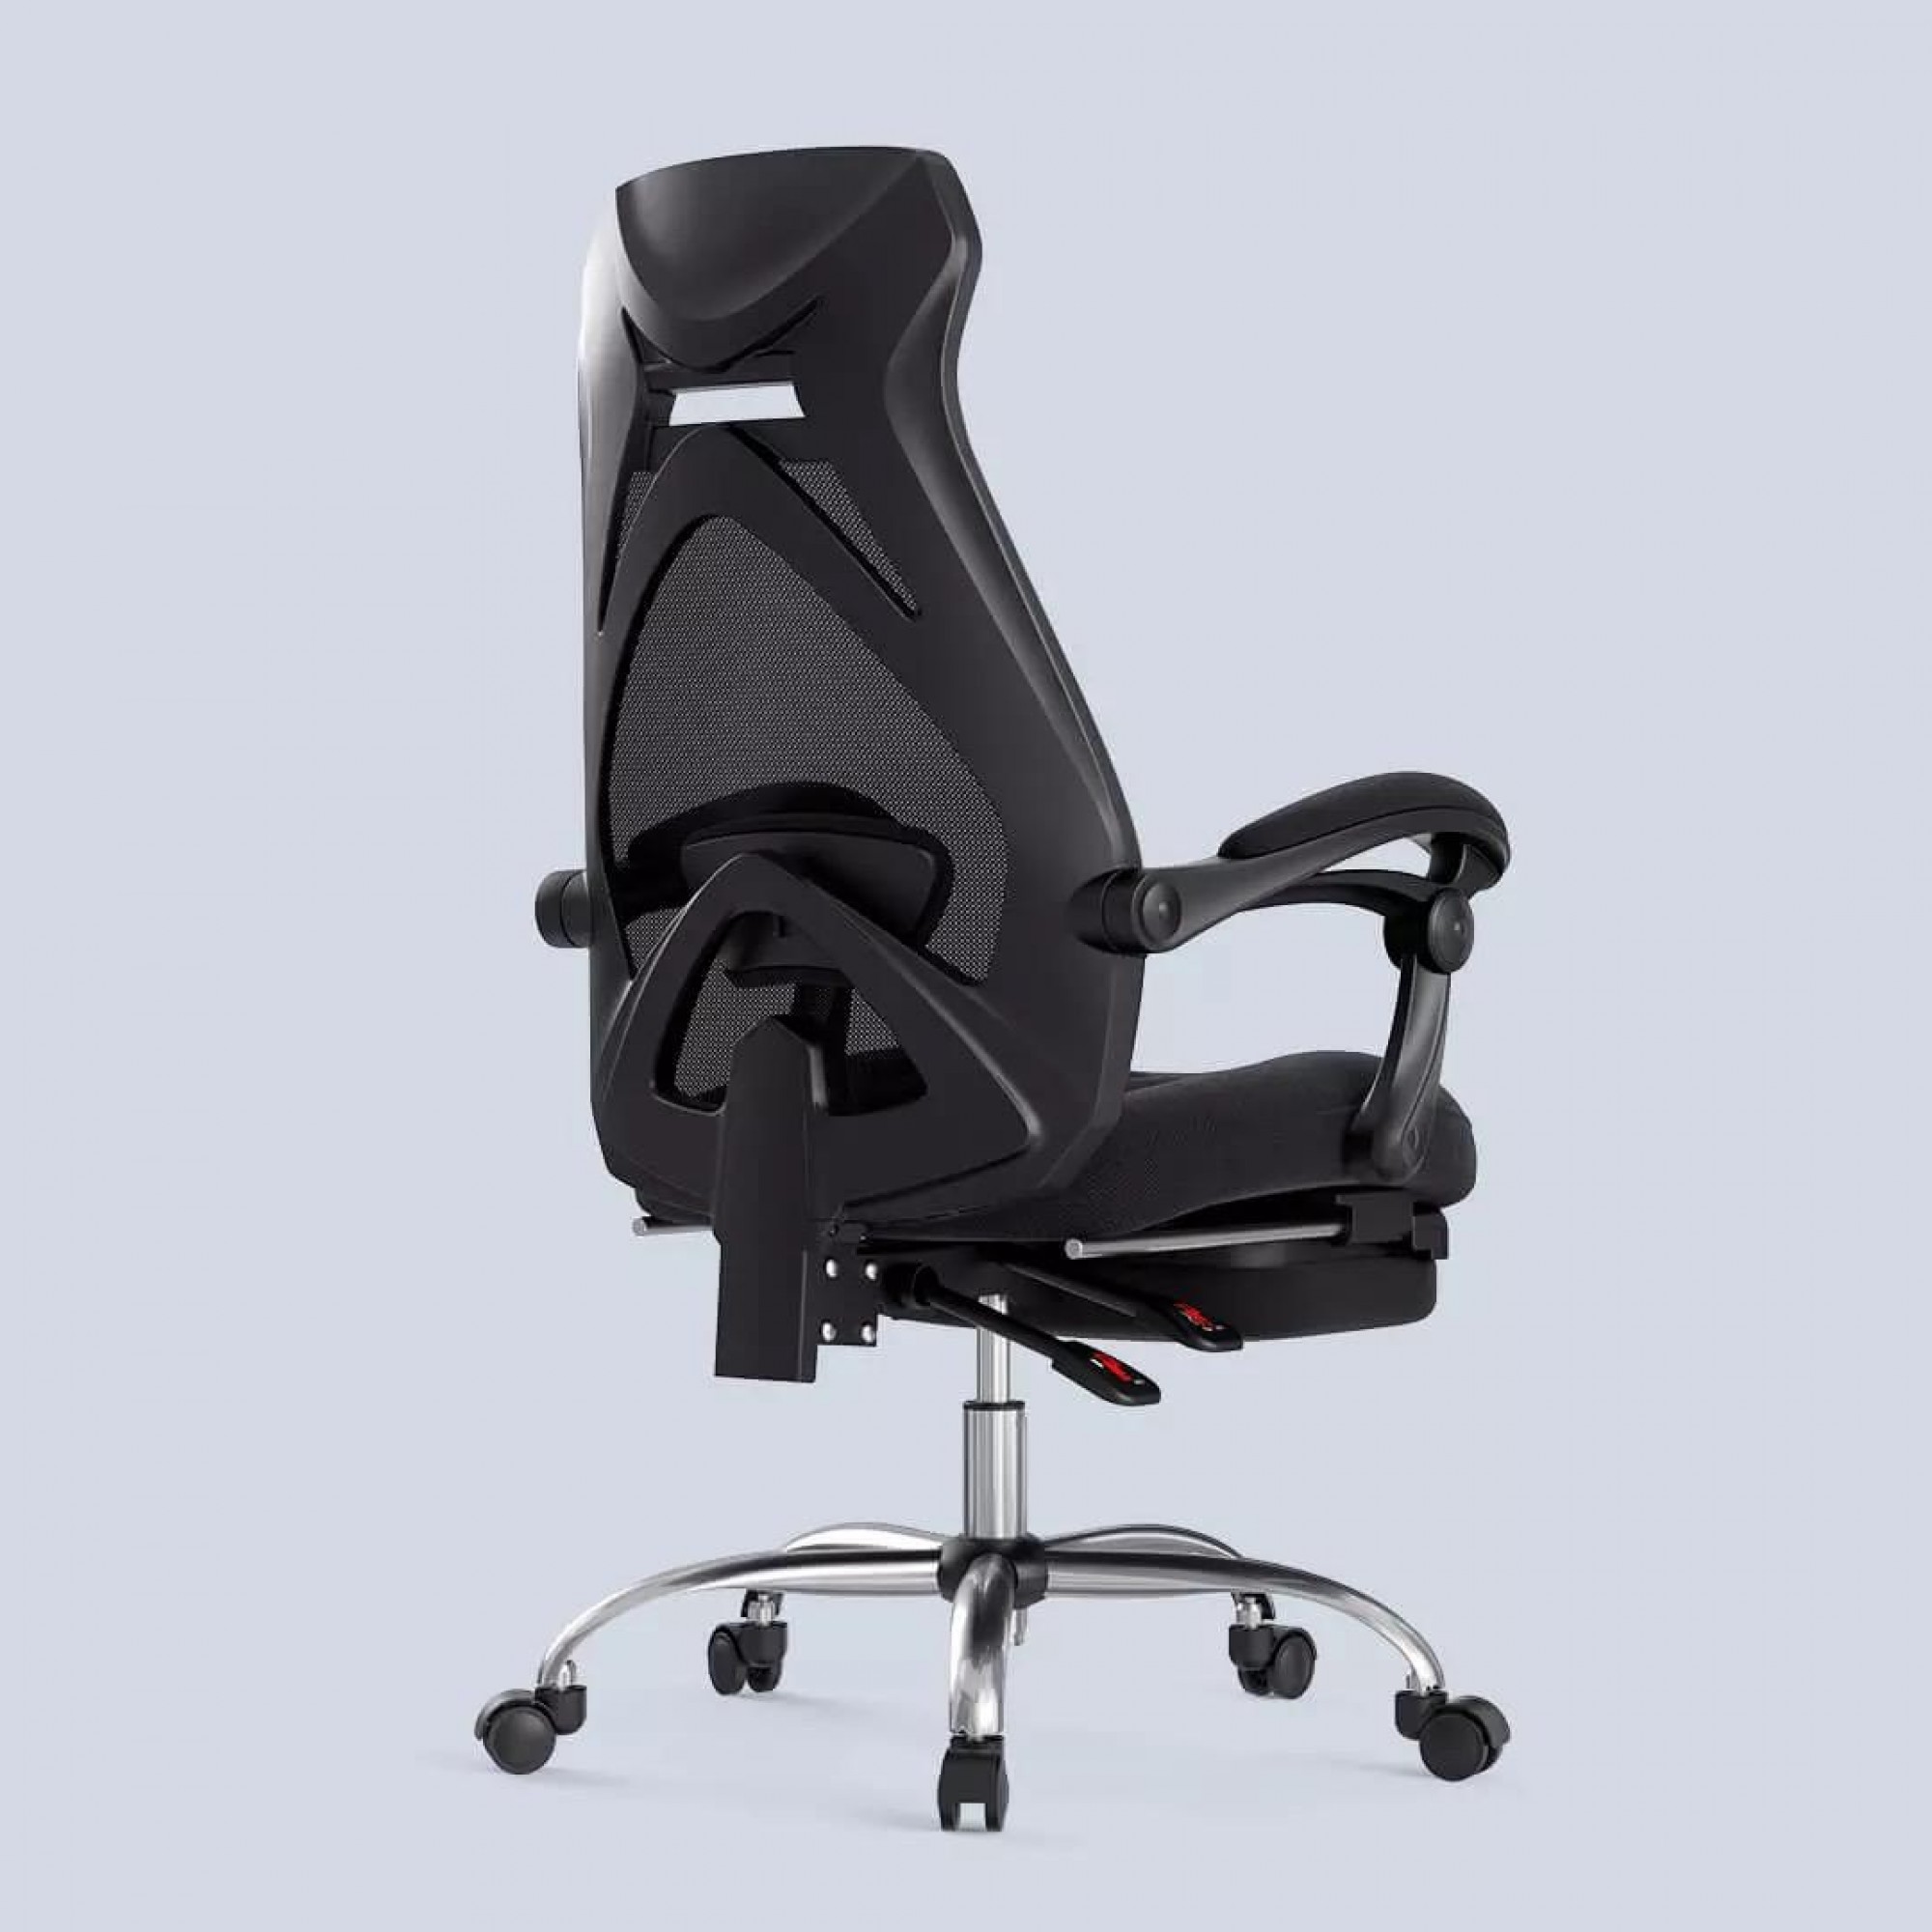 Хорошее офисное кресло для спины и шеи